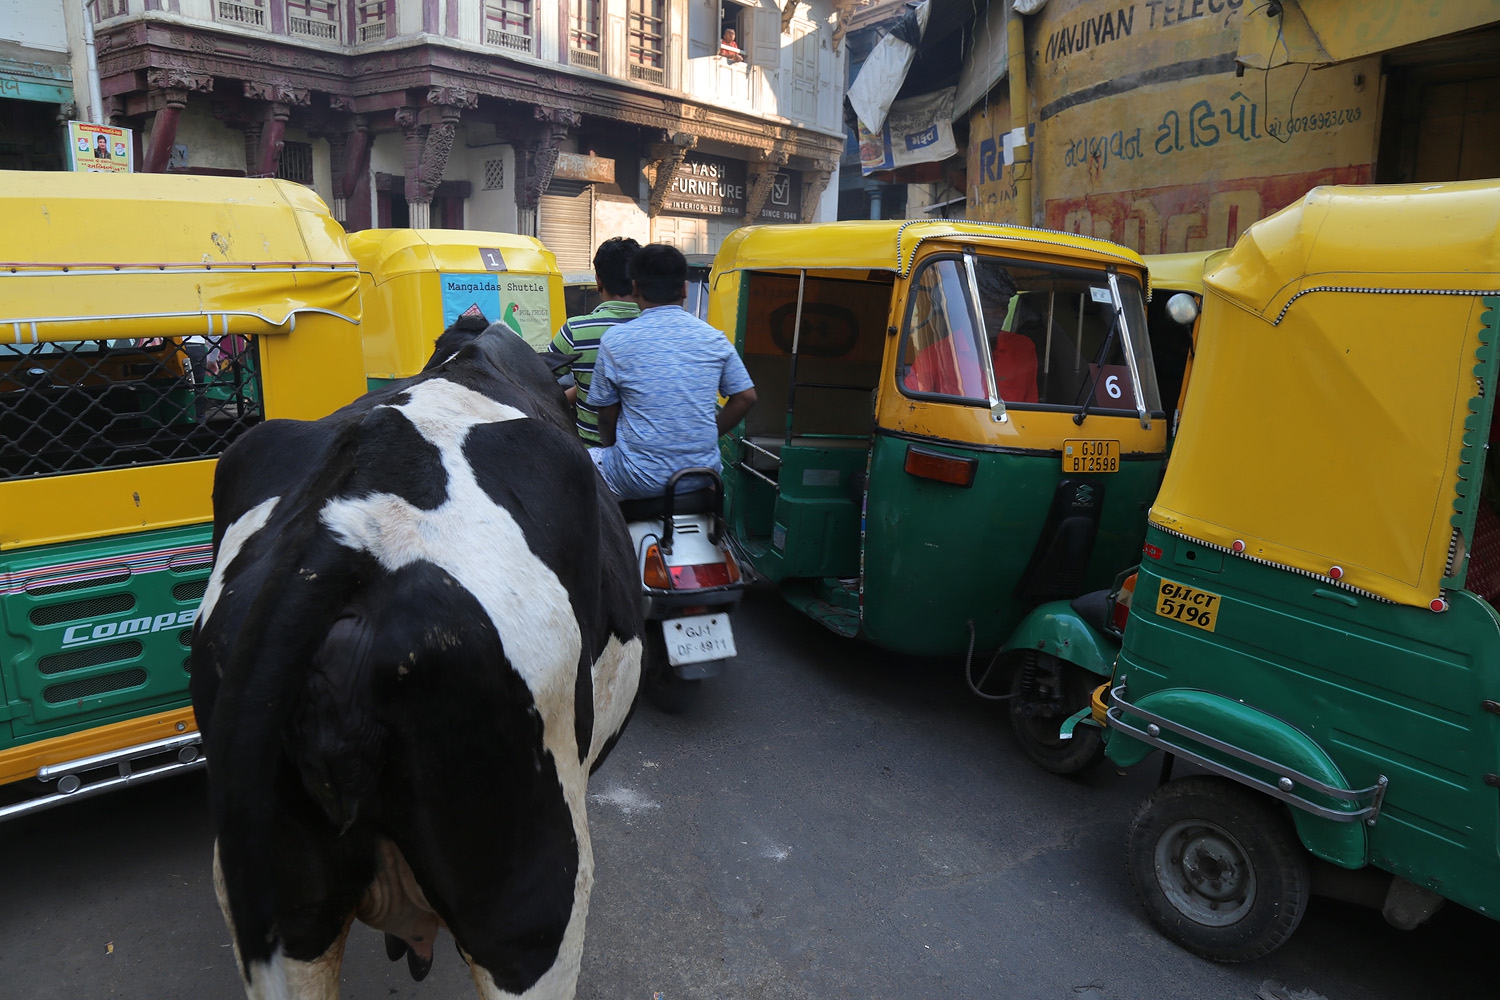 bill-hocker-traffic-jam-ahmedabad-india-2018